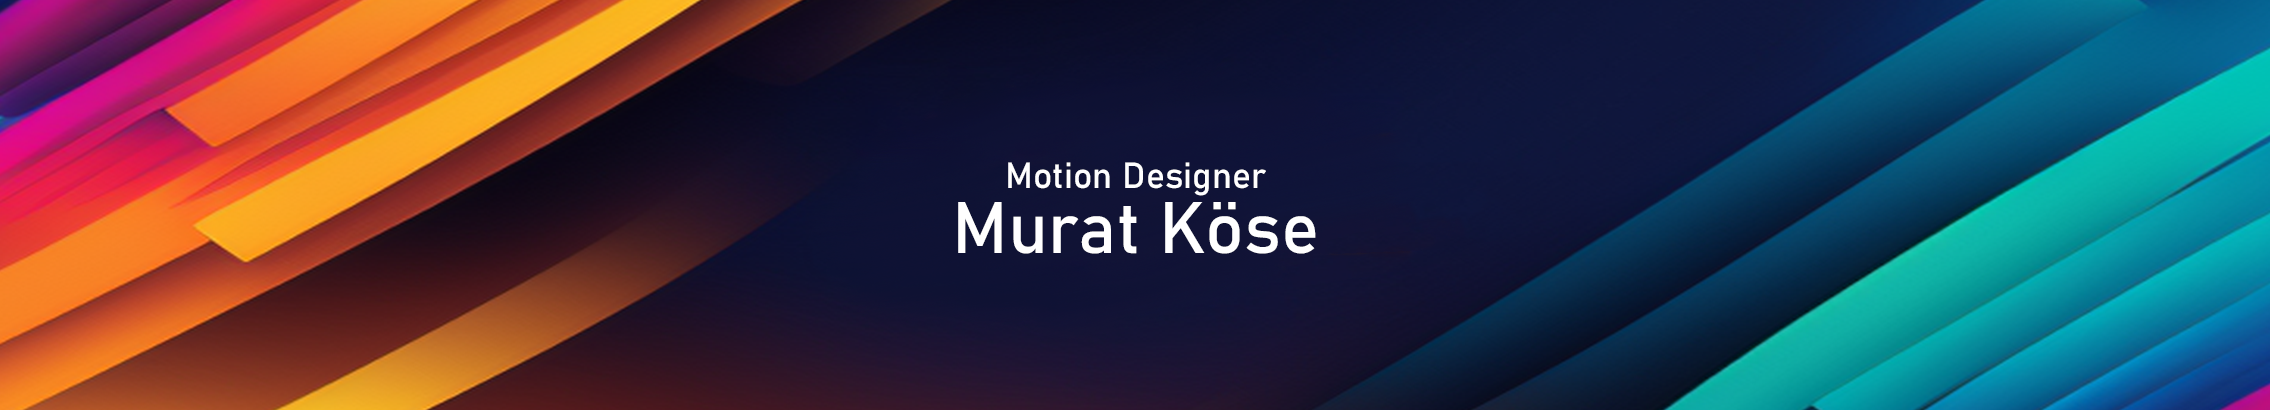 Murat Köse's profile banner